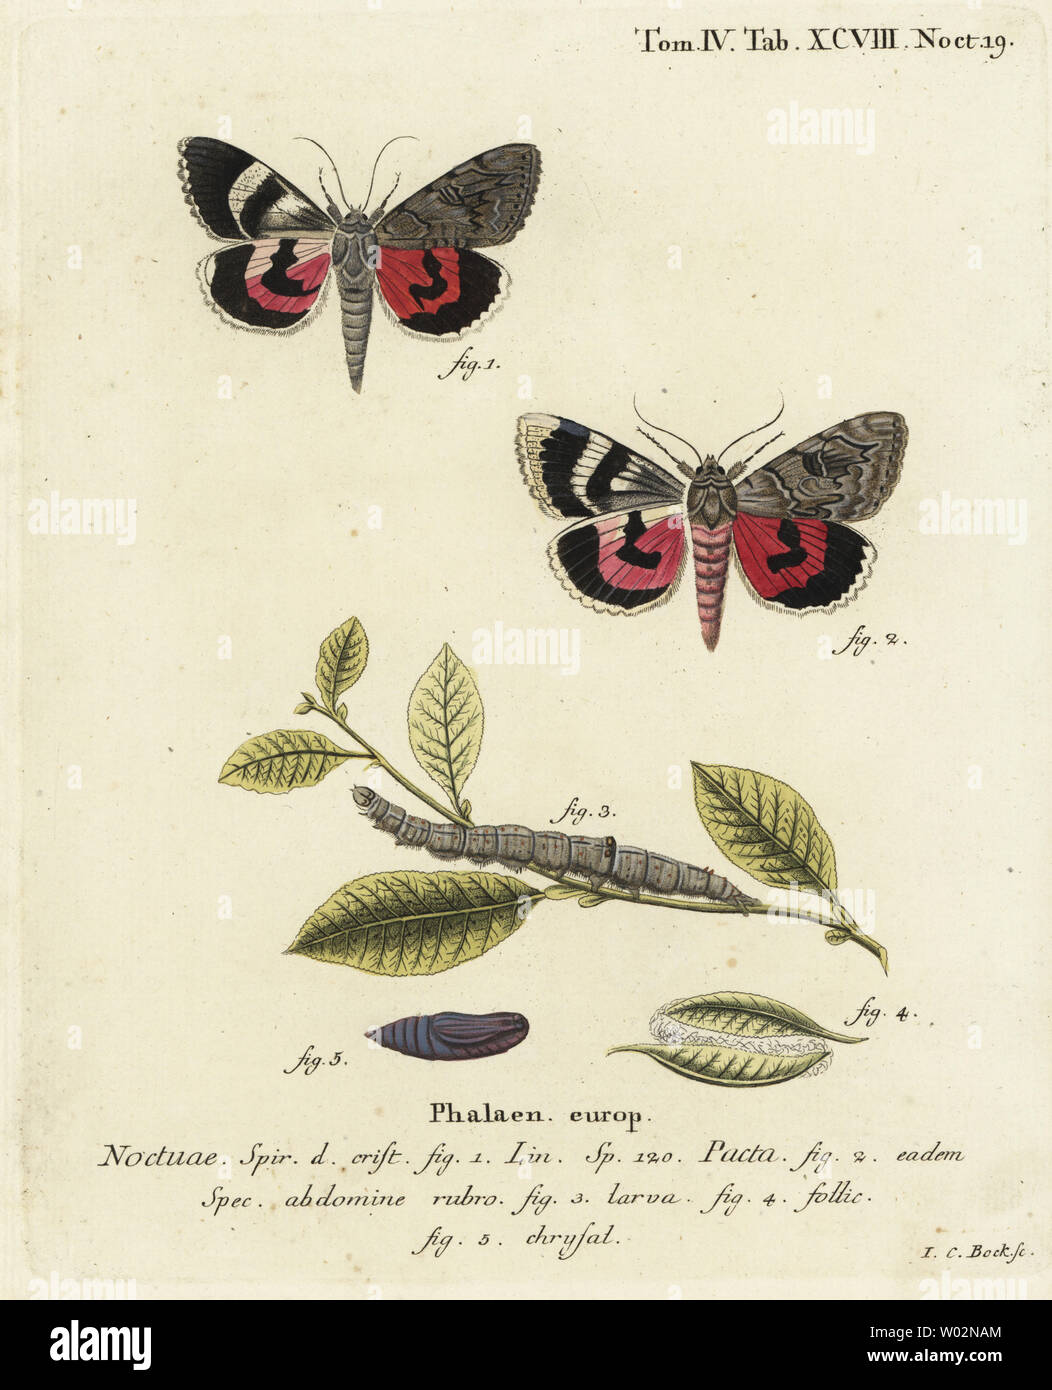 Catocala pacta moth. Handcoloured copperplate engraving by Johann Carl Bock after Eugenius Johann Christoph Esper’s Die Schmetterlinge in Abbildungen nach der Natur, Erlangen, 1786. Stock Photo